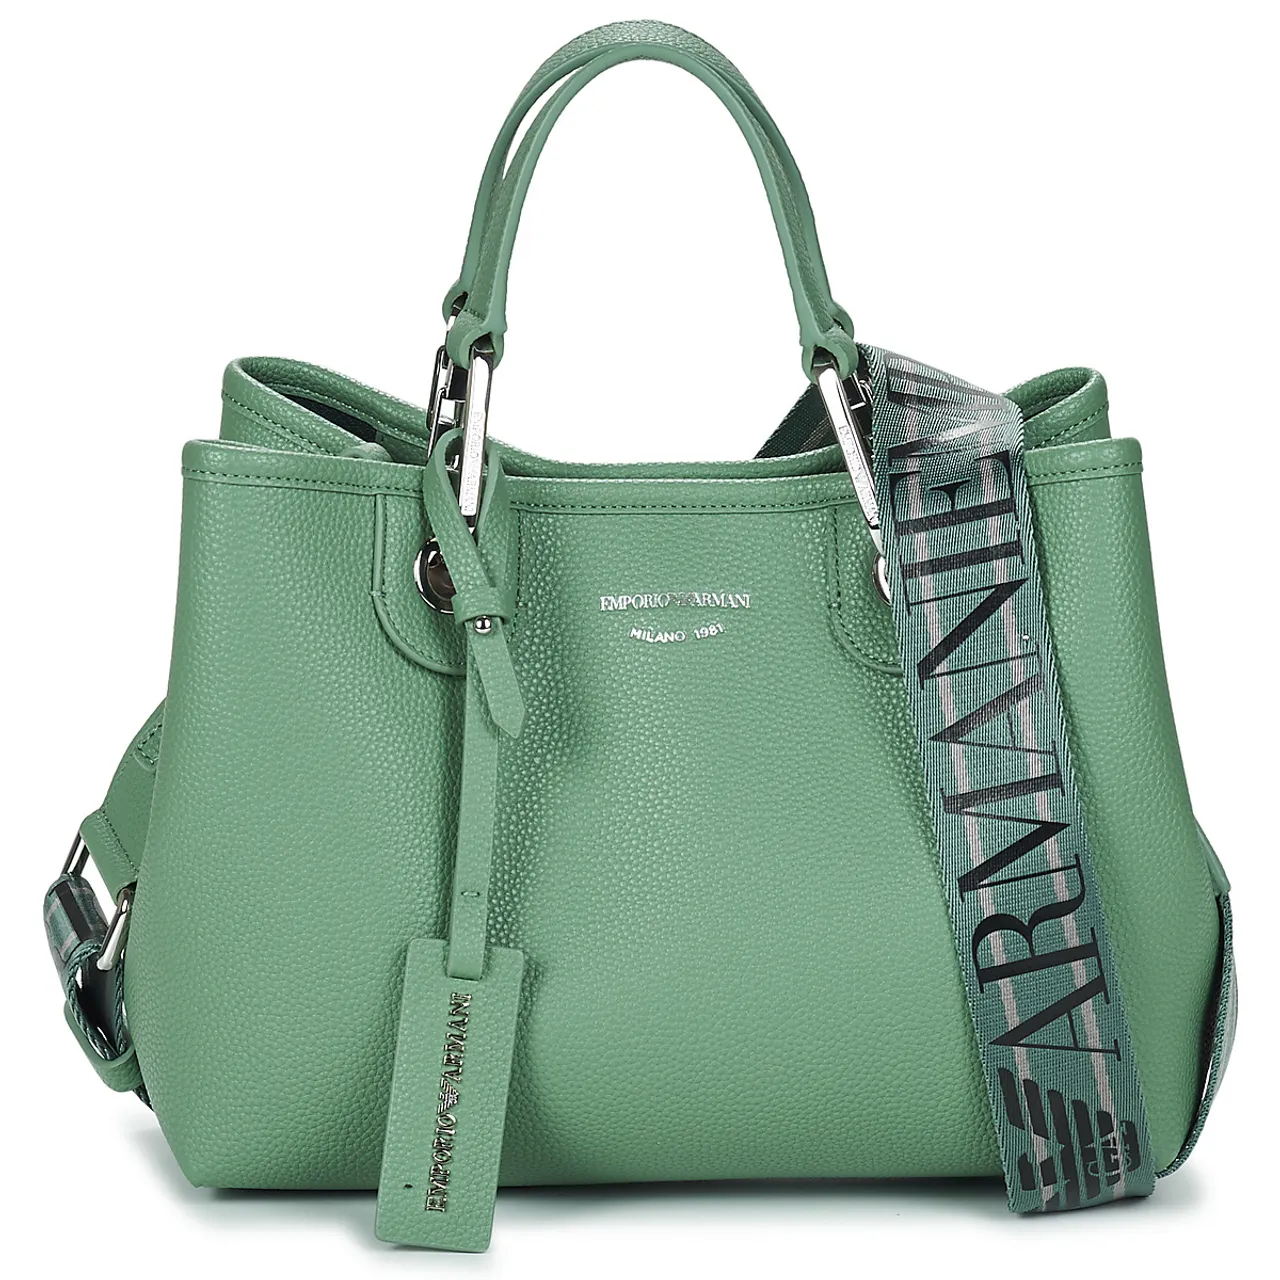 Emporio Armani  MY EA M  women's Handbags in Green